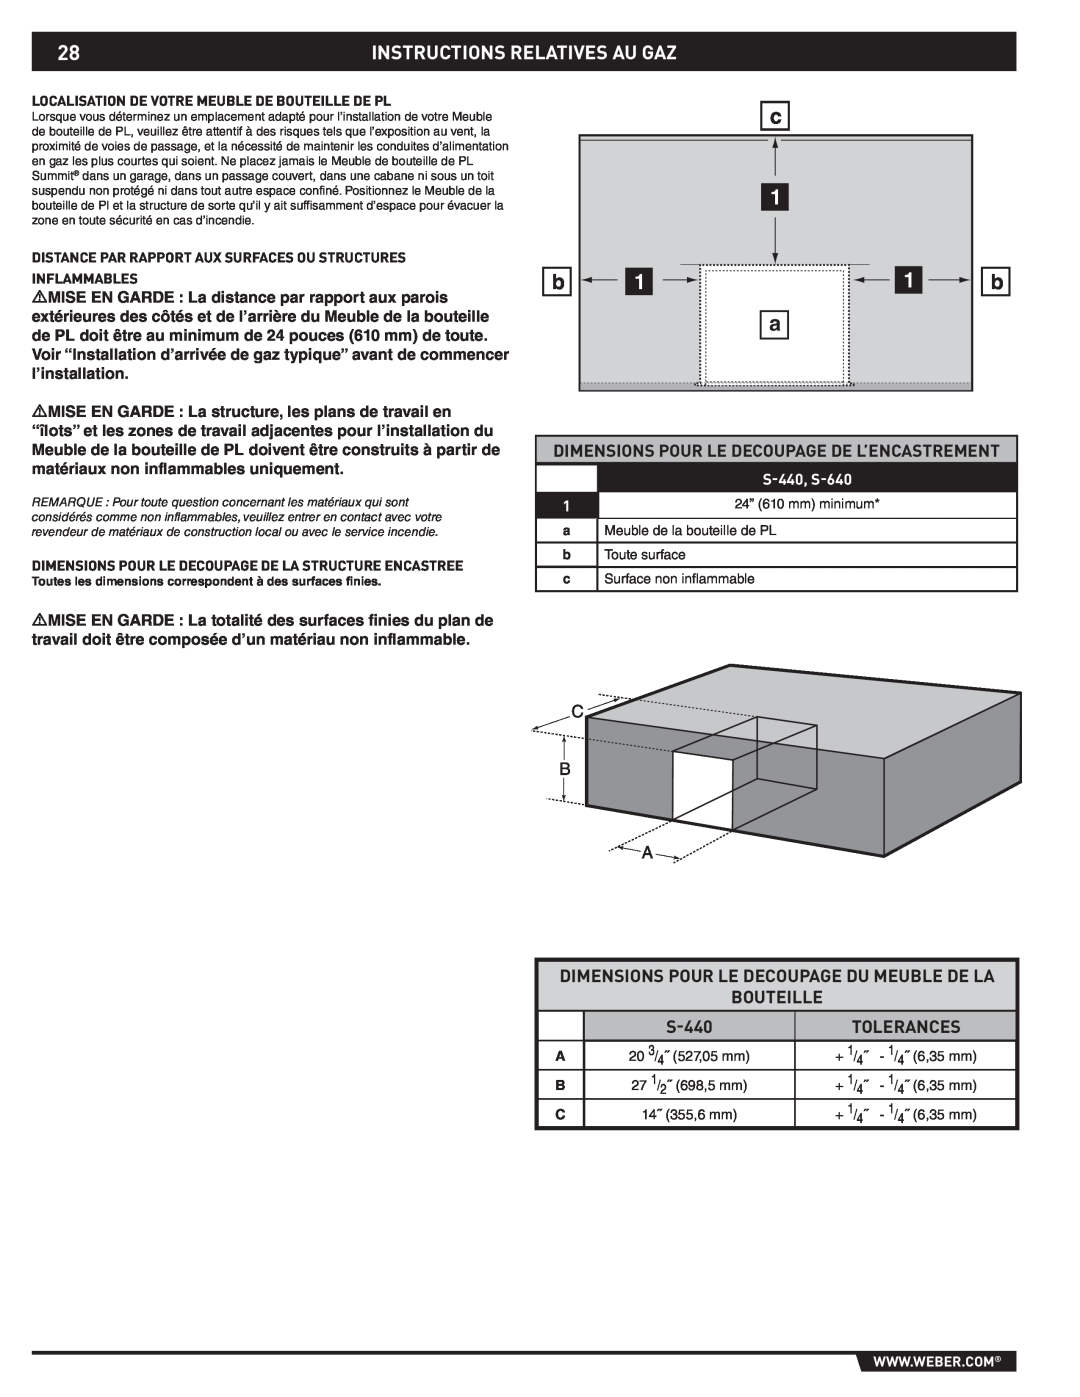 Weber 43176 Instructions Relatives Au Gaz, Dimensions Pour Le Decoupage De L’Encastrement, Bouteille, S-440, Tolerances 